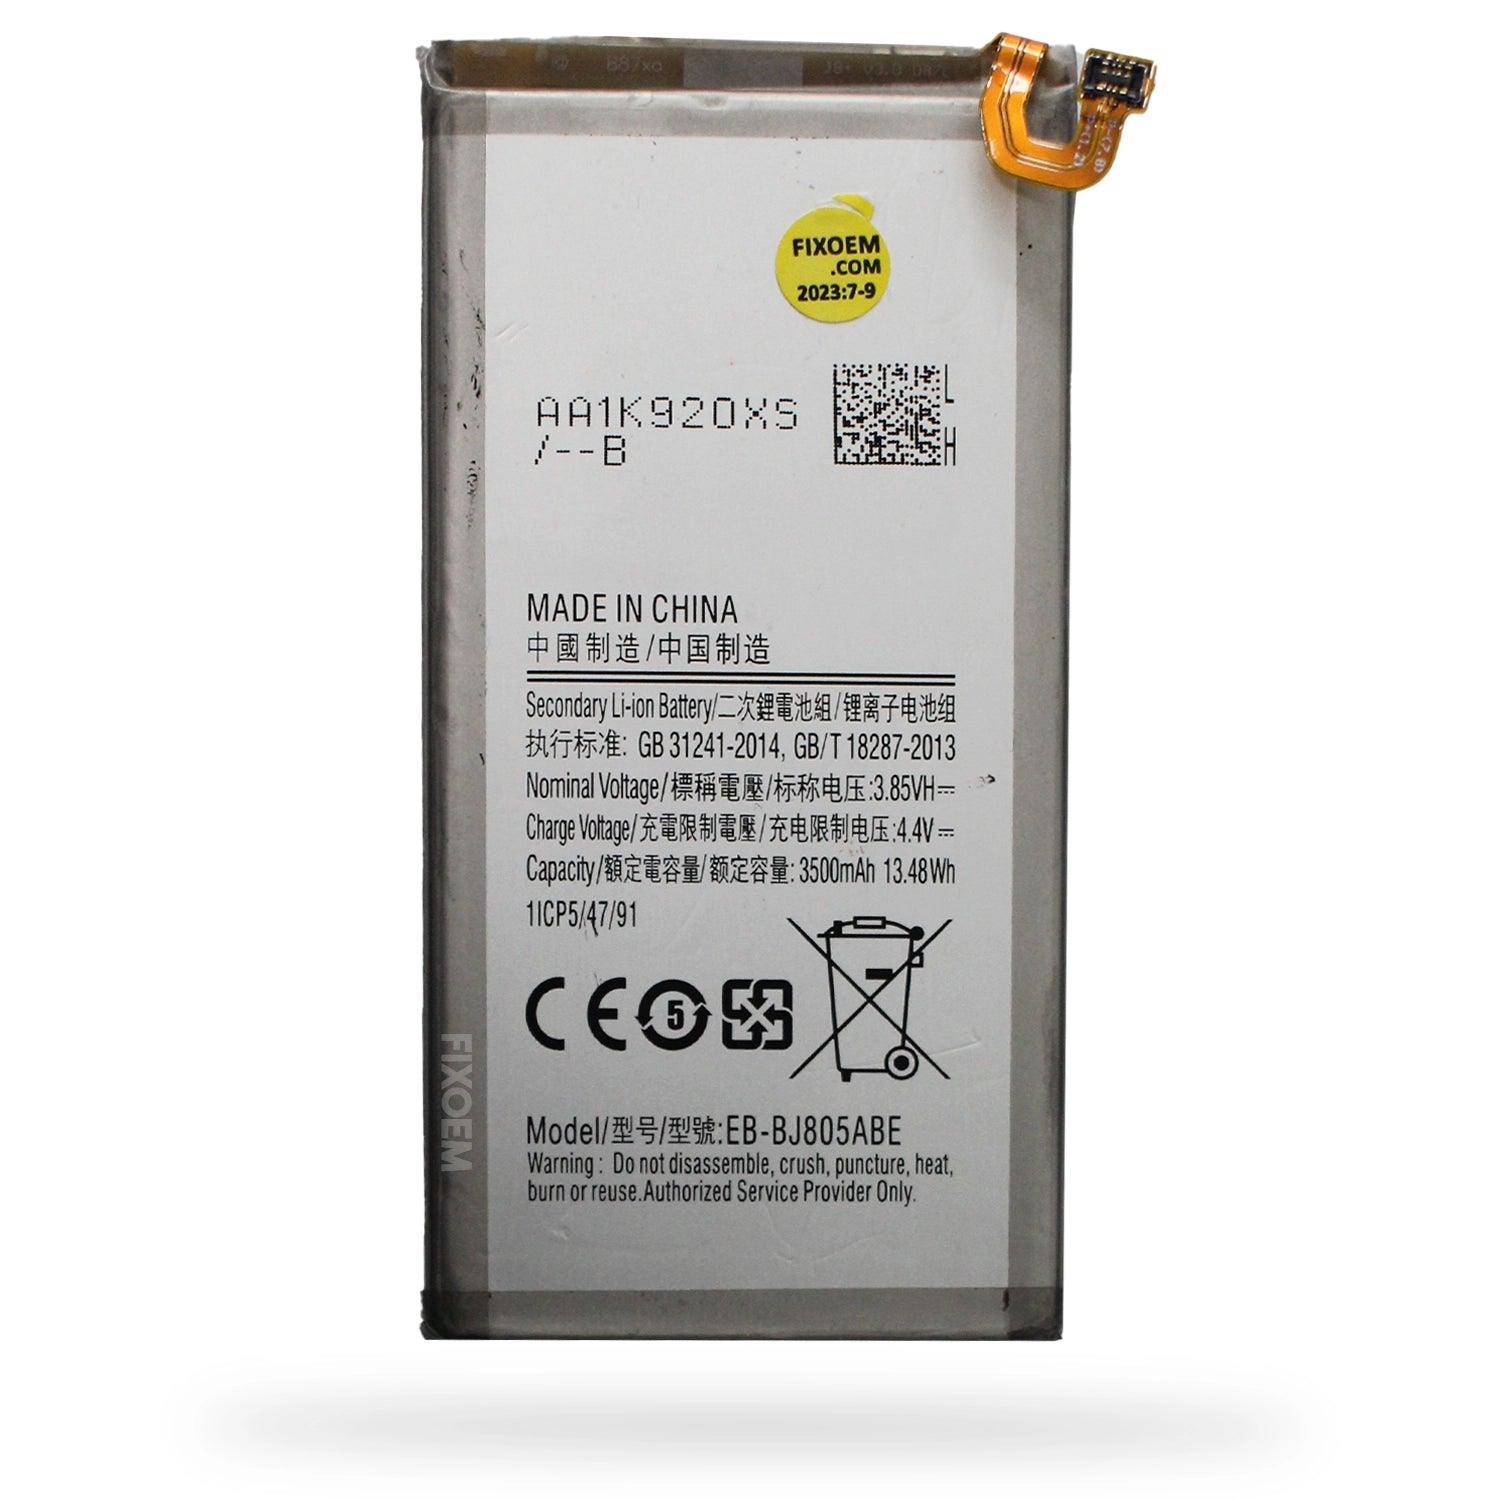 Bateria Samsung A6 Plus Sm-A605 Eb-Bj805Abe a solo $ 140.00 Refaccion y puestos celulares, refurbish y microelectronica.- FixOEM